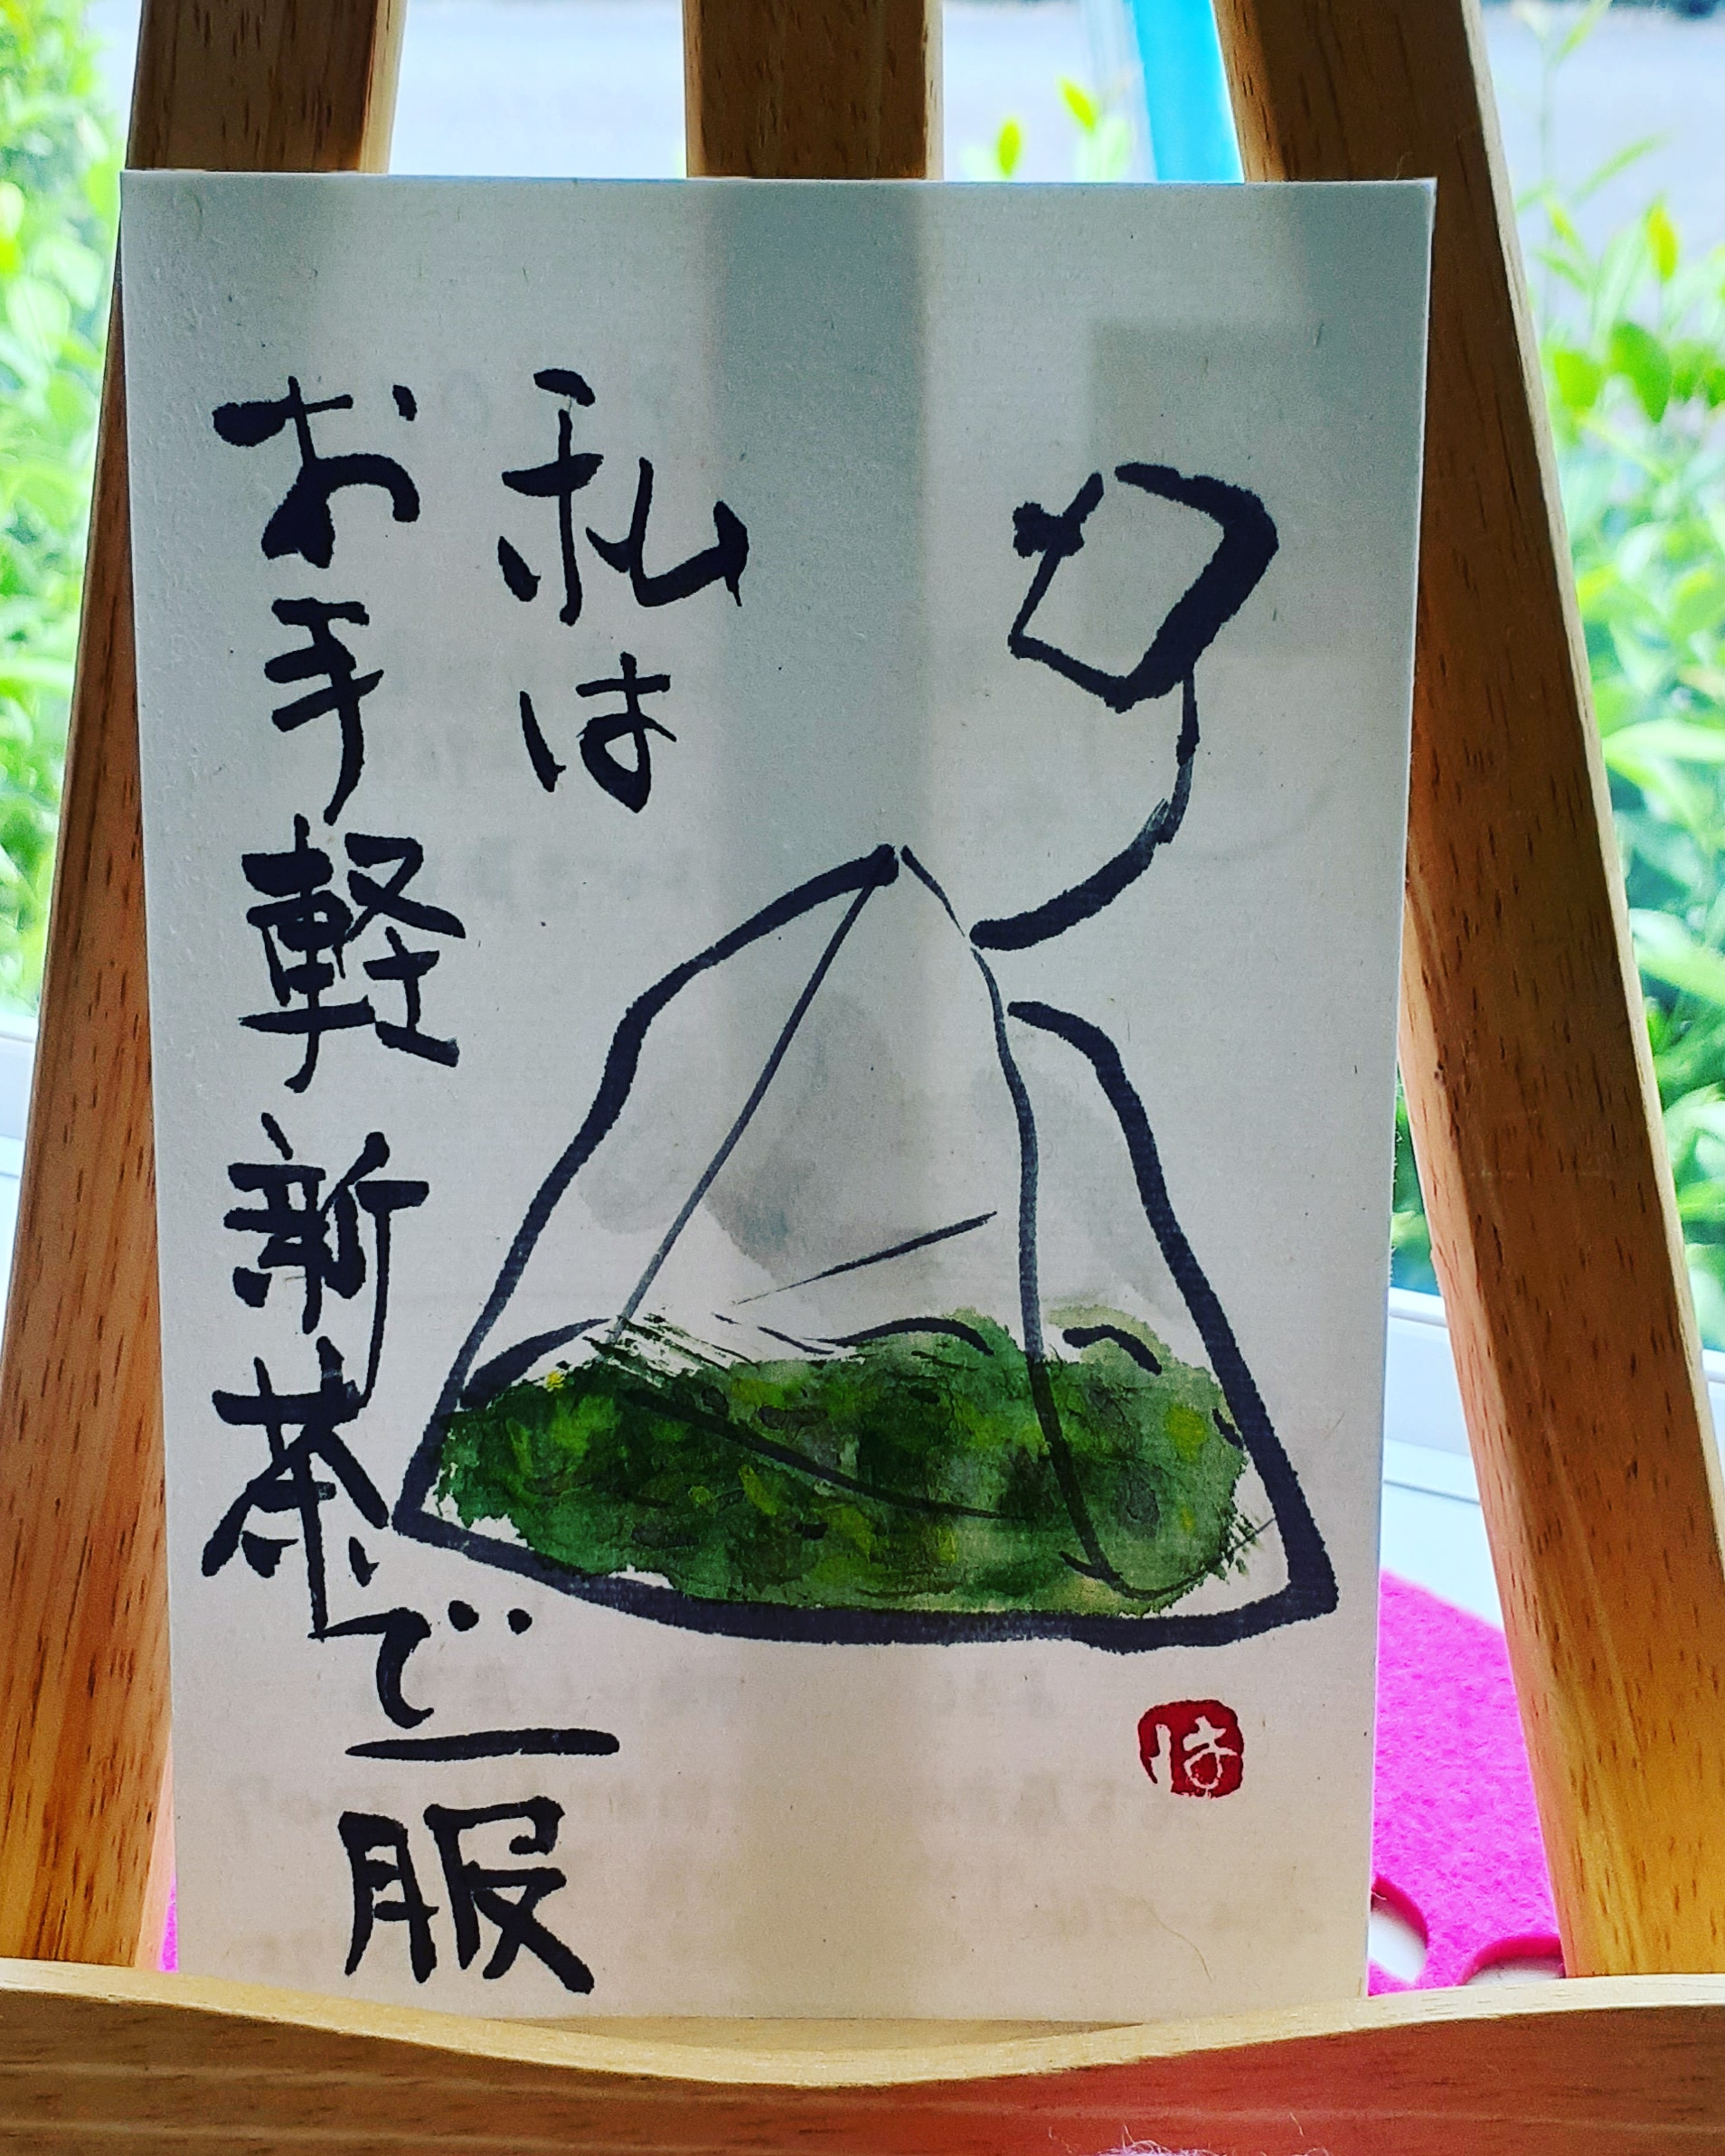 お茶はがき屋に名古屋市の伊藤様から届いた絵手紙です♪